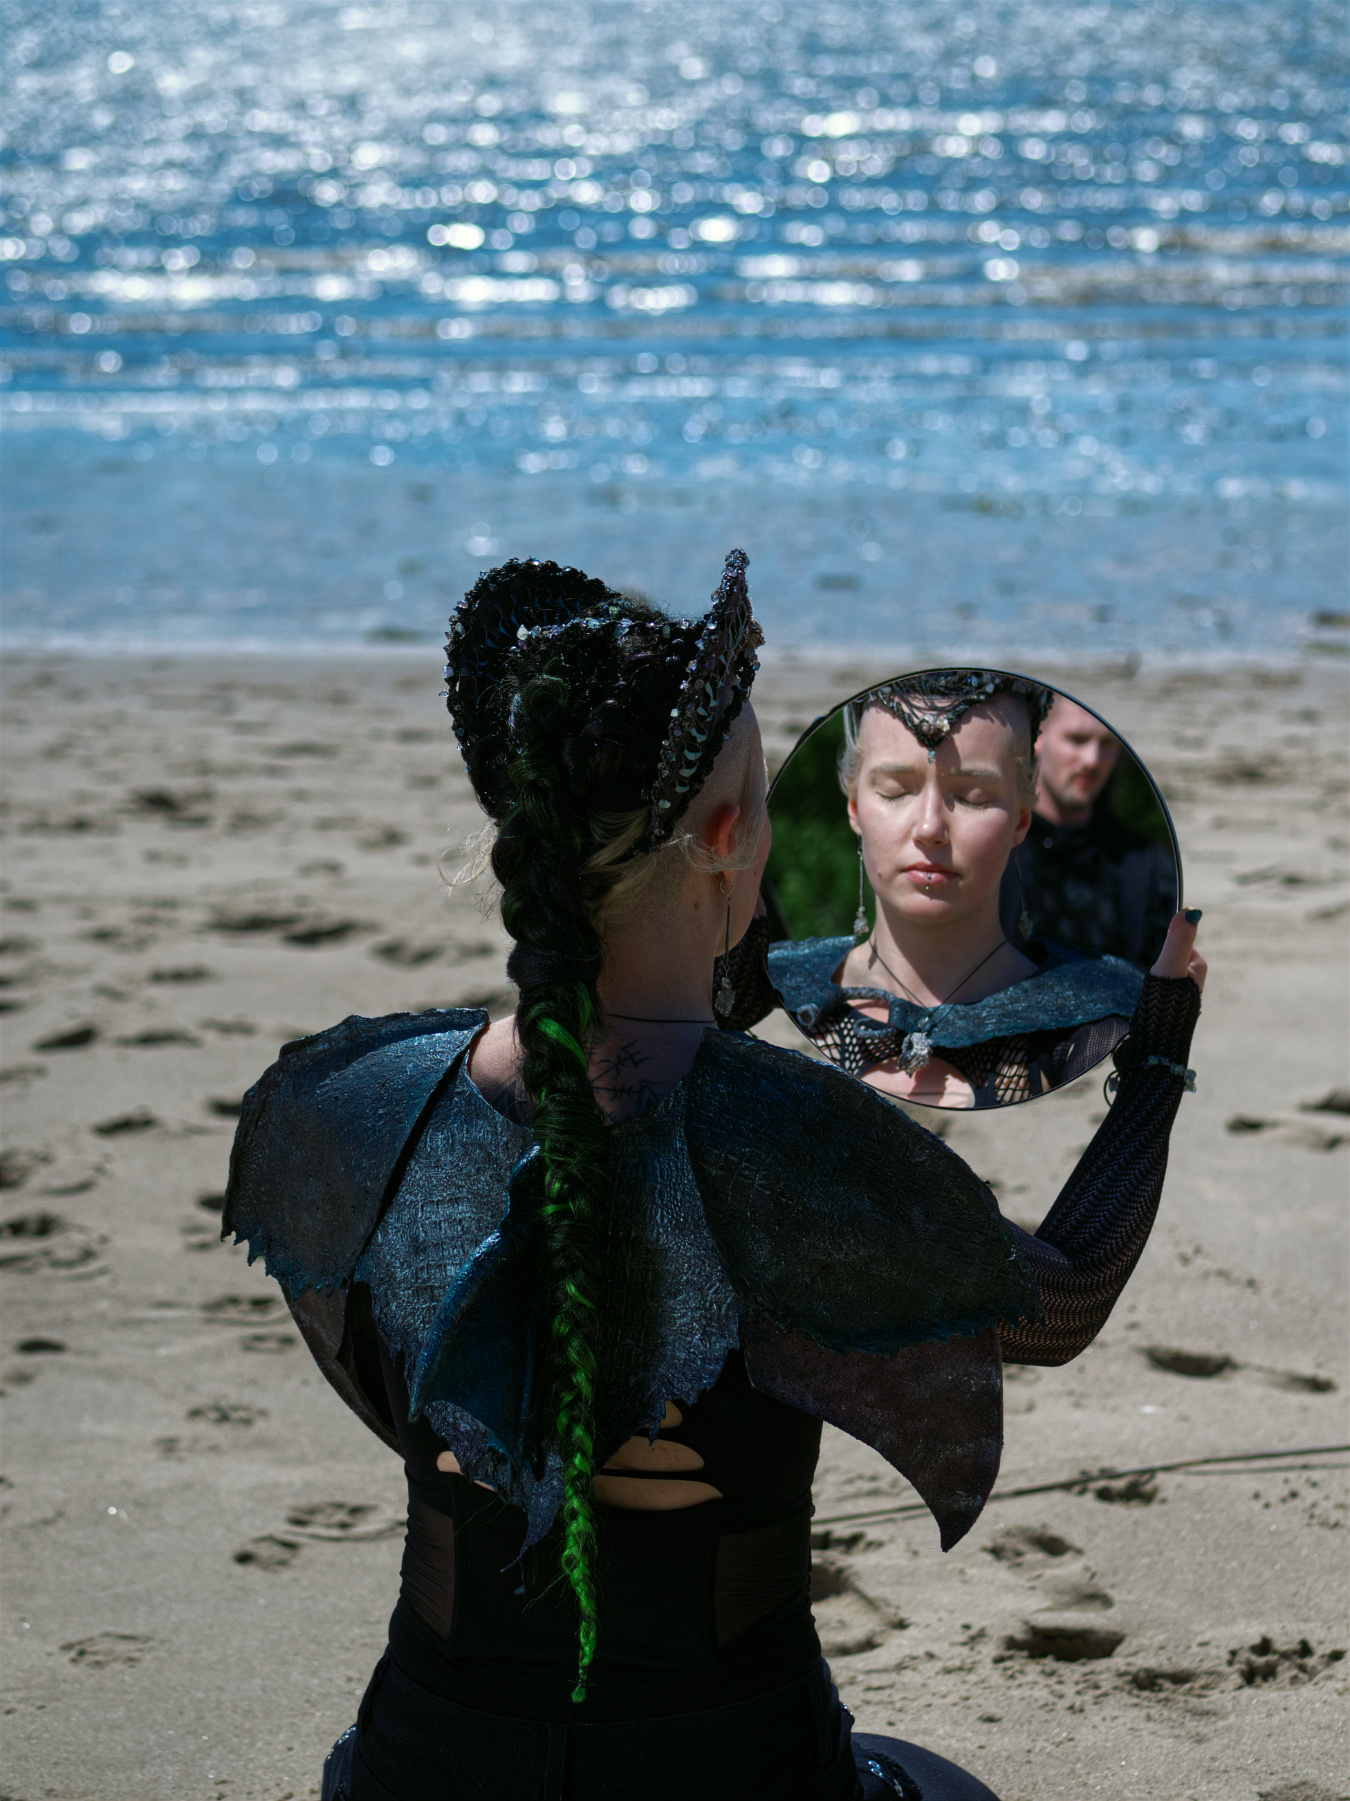 Die Meerjungfrau Miruna hält einen Spiegel in den der Seher Wilk von Weitem auch sieht